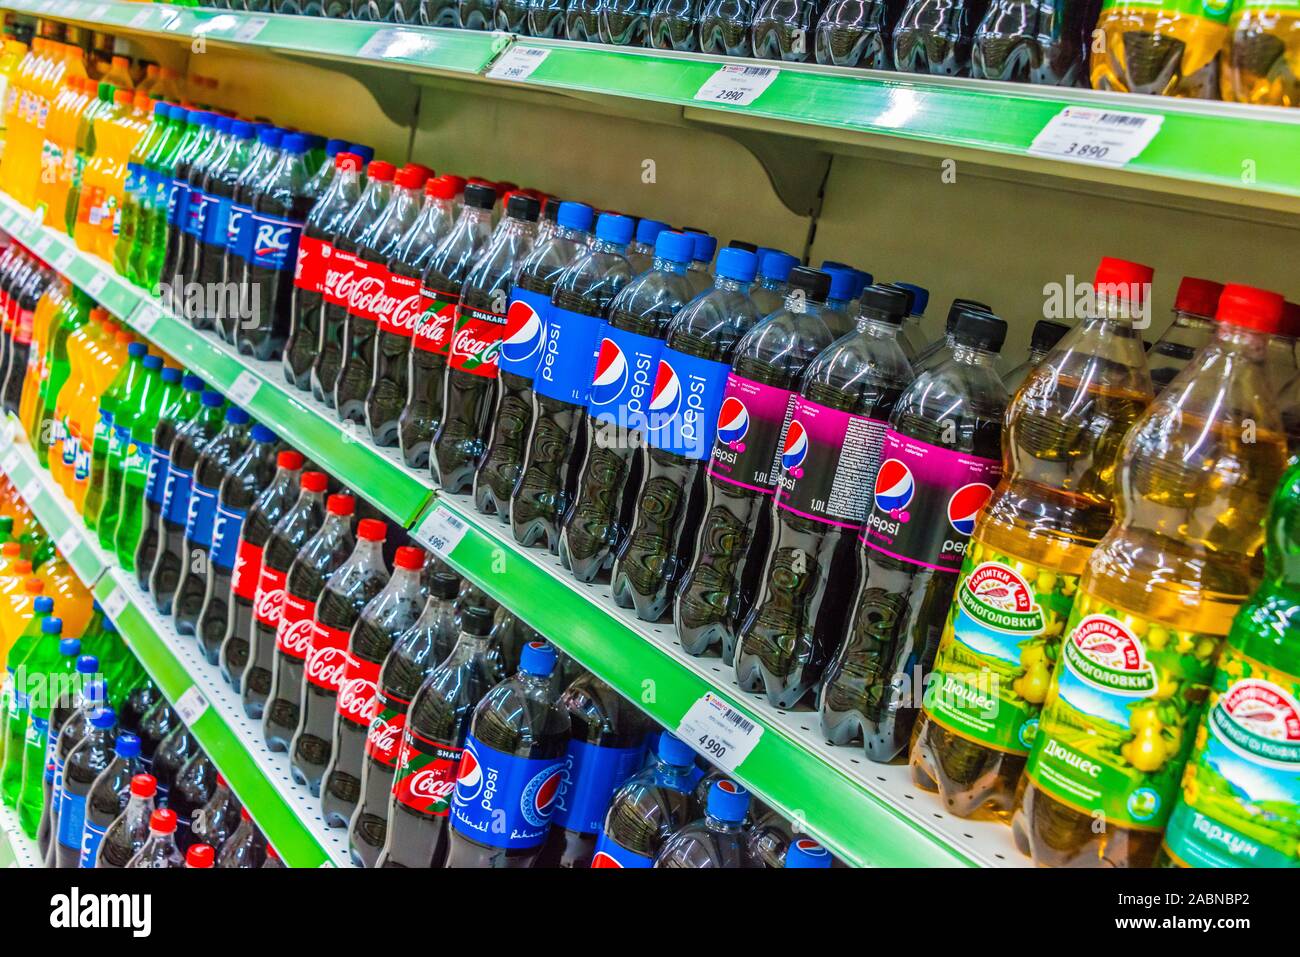 Taschkent, Usbekistan - Mai 12, 2019: Flaschen mit beliebten Erfrischungsgetränke mit Kohlensäure auf dem Regal im Supermarkt angezeigt Stockfoto